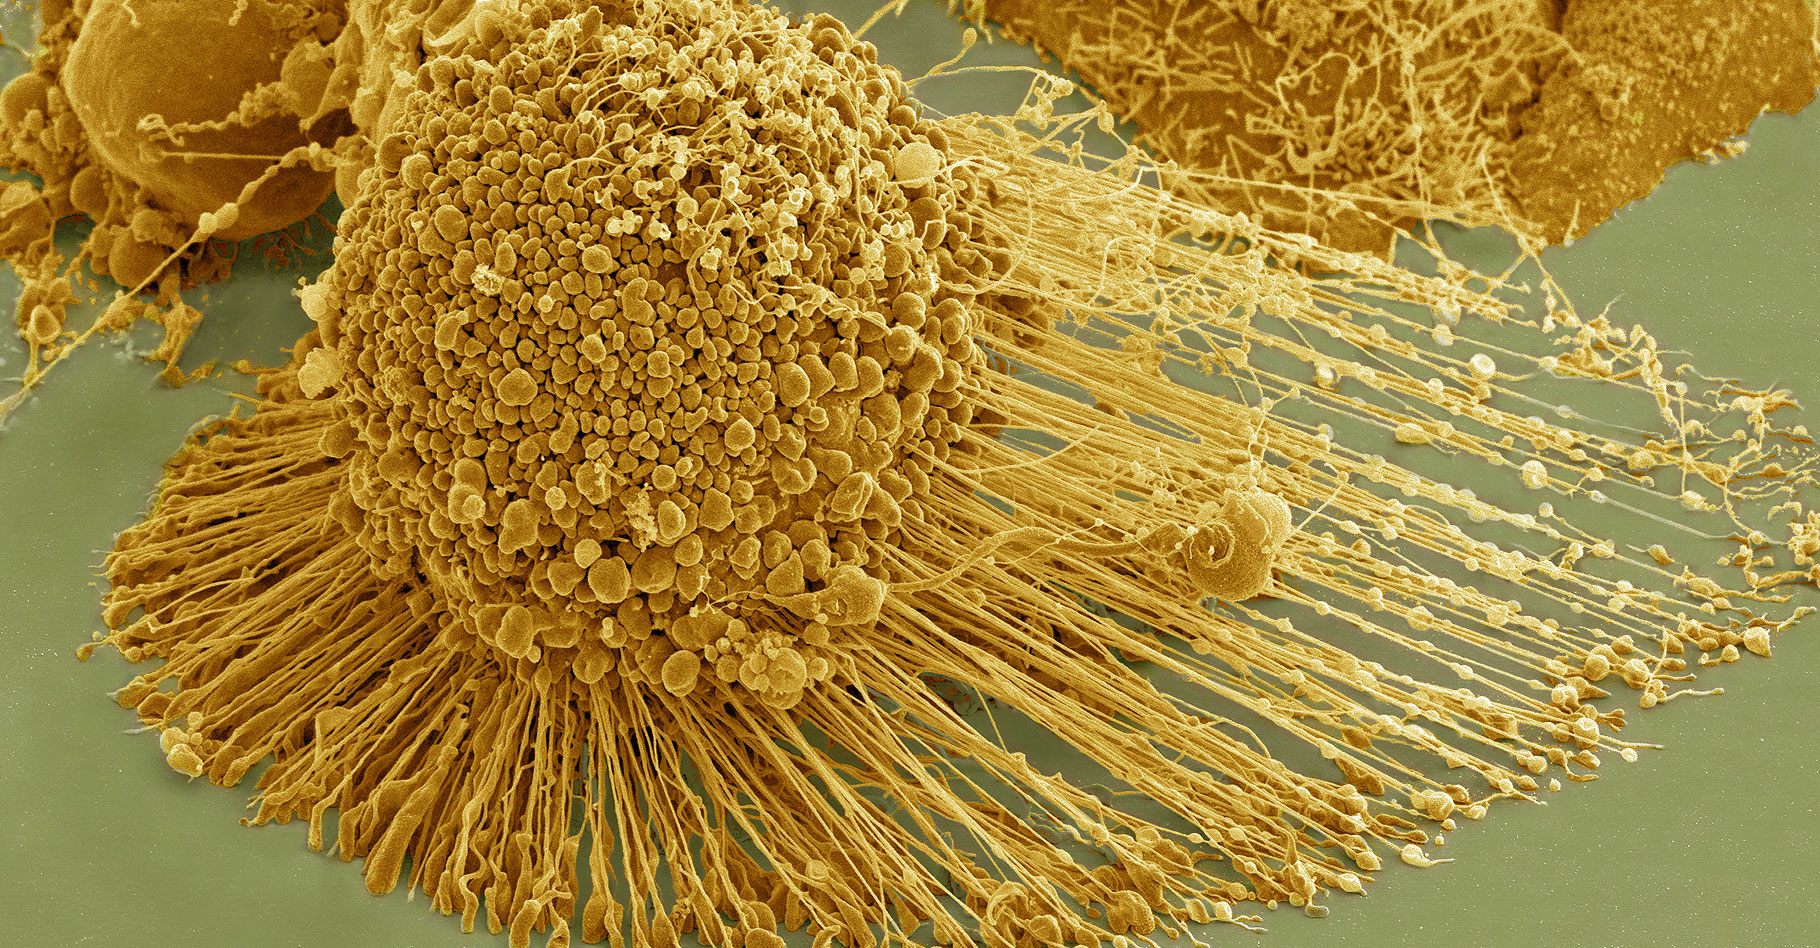 Cellules HeLa observées au microscope électronique à balayage.&nbsp;© National Institutes of Health (NIH) - Domaine public